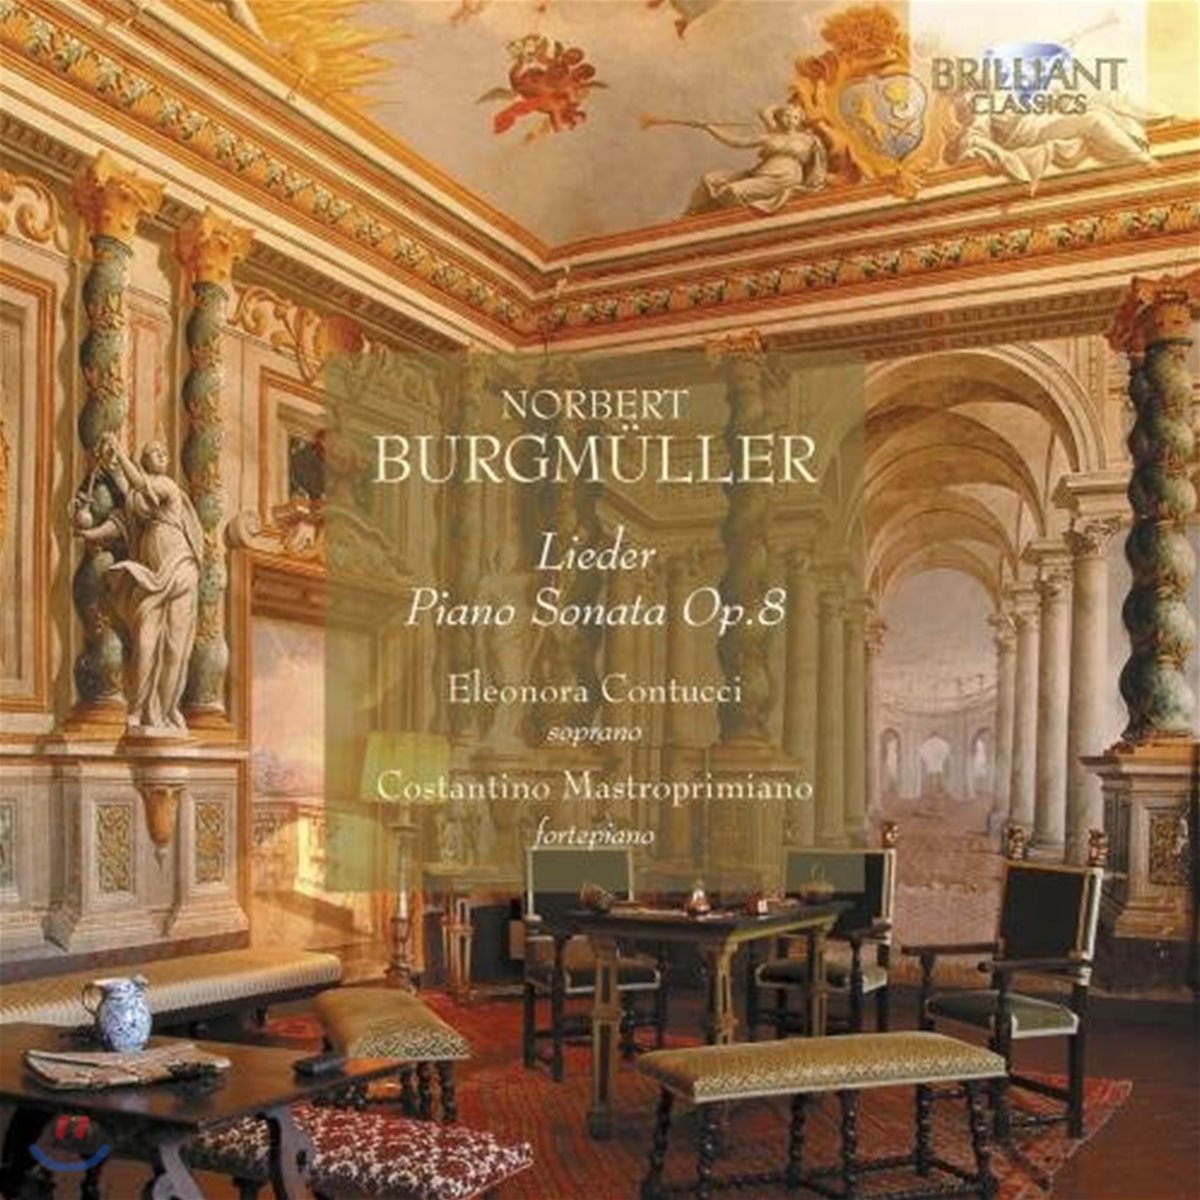 Eleonora Contucci 부르크뮐러: 가곡집과 피아노 소나타 - 엘레오노라 콘투치, 코스탄티노 마스트로프리미아노 (Norbert Burgmuller: Lieder, Piano Sonata Op.8)